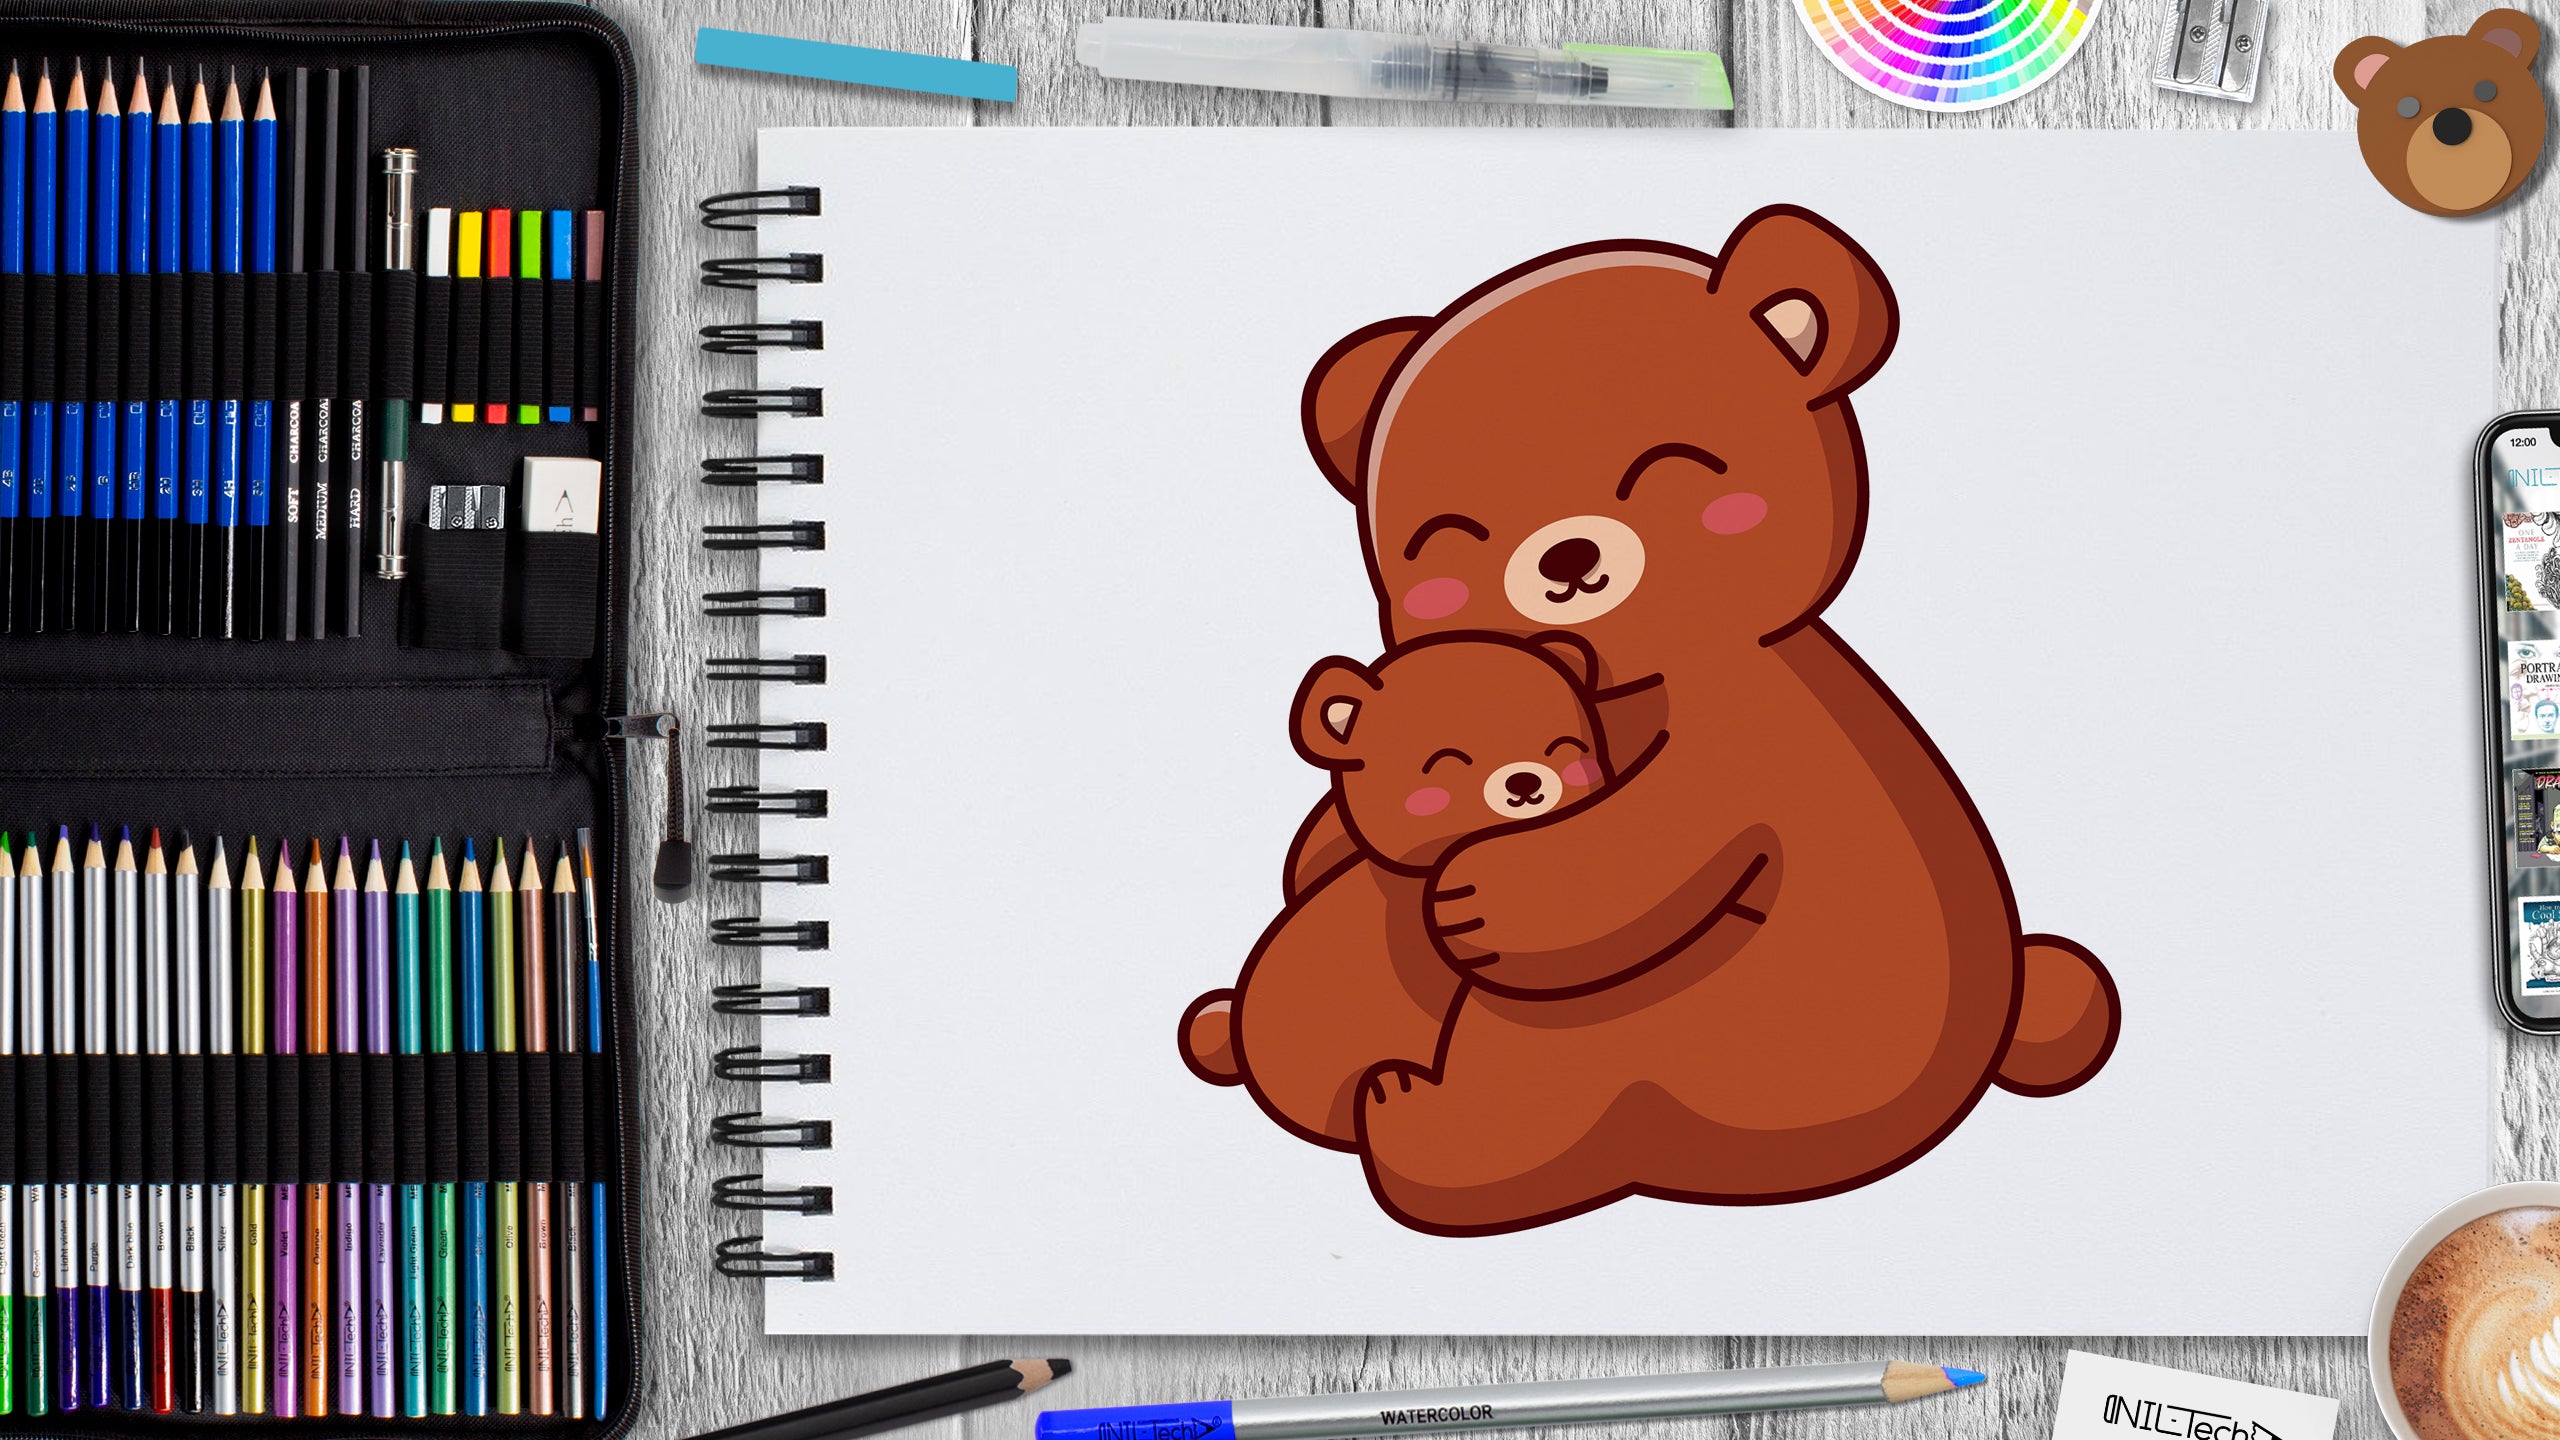 How to draw a teddy bear? - CraftyThinking